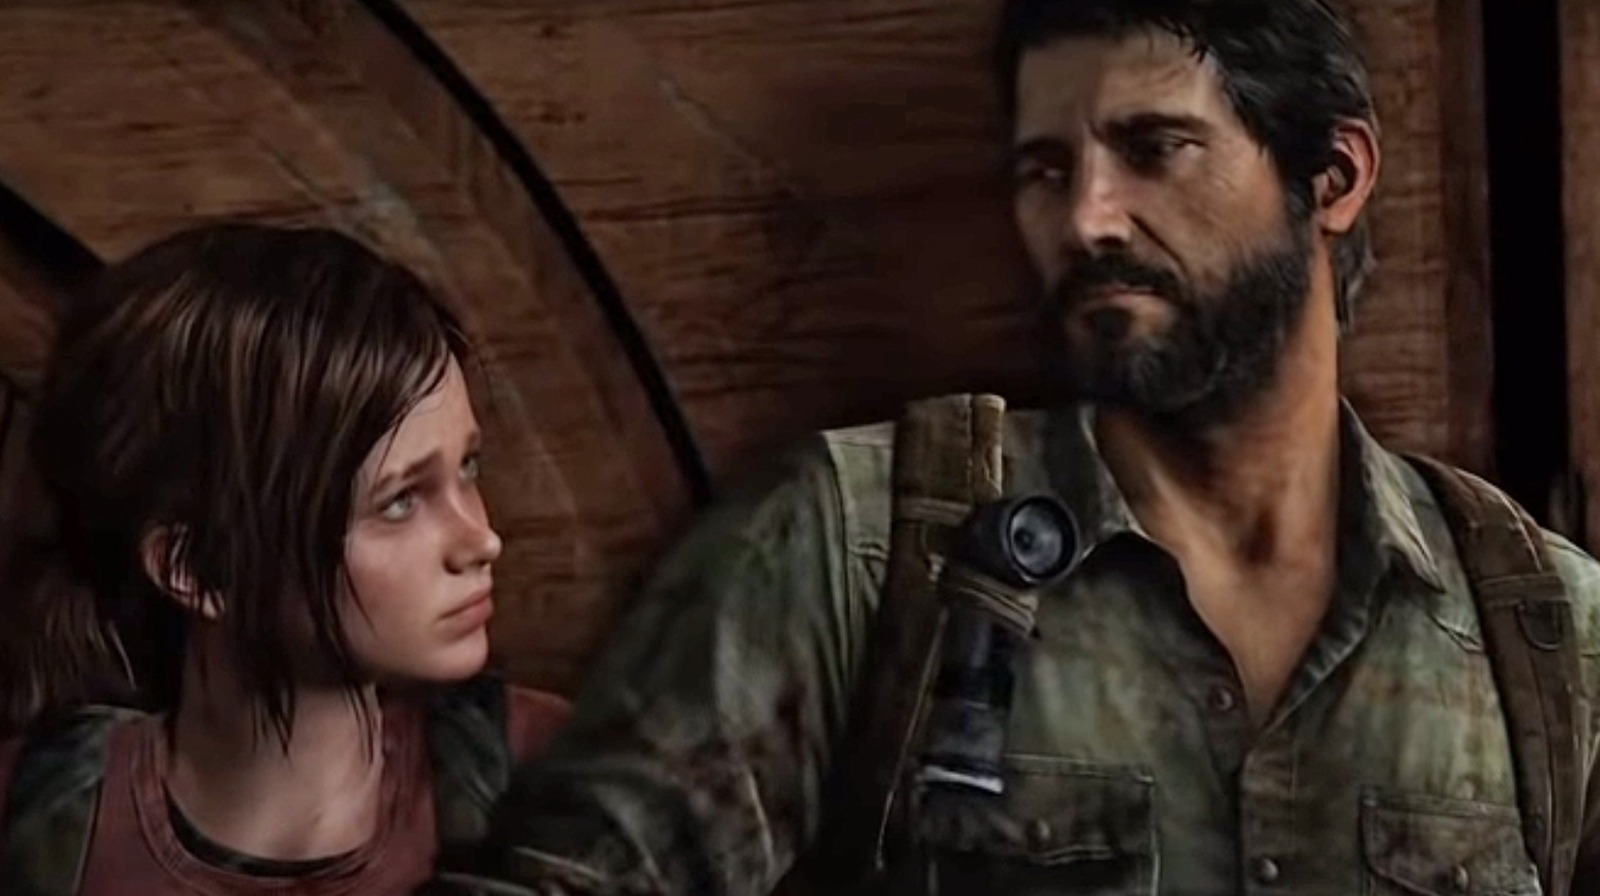 THE LAST OF US Ellie Meets Video Game Joel